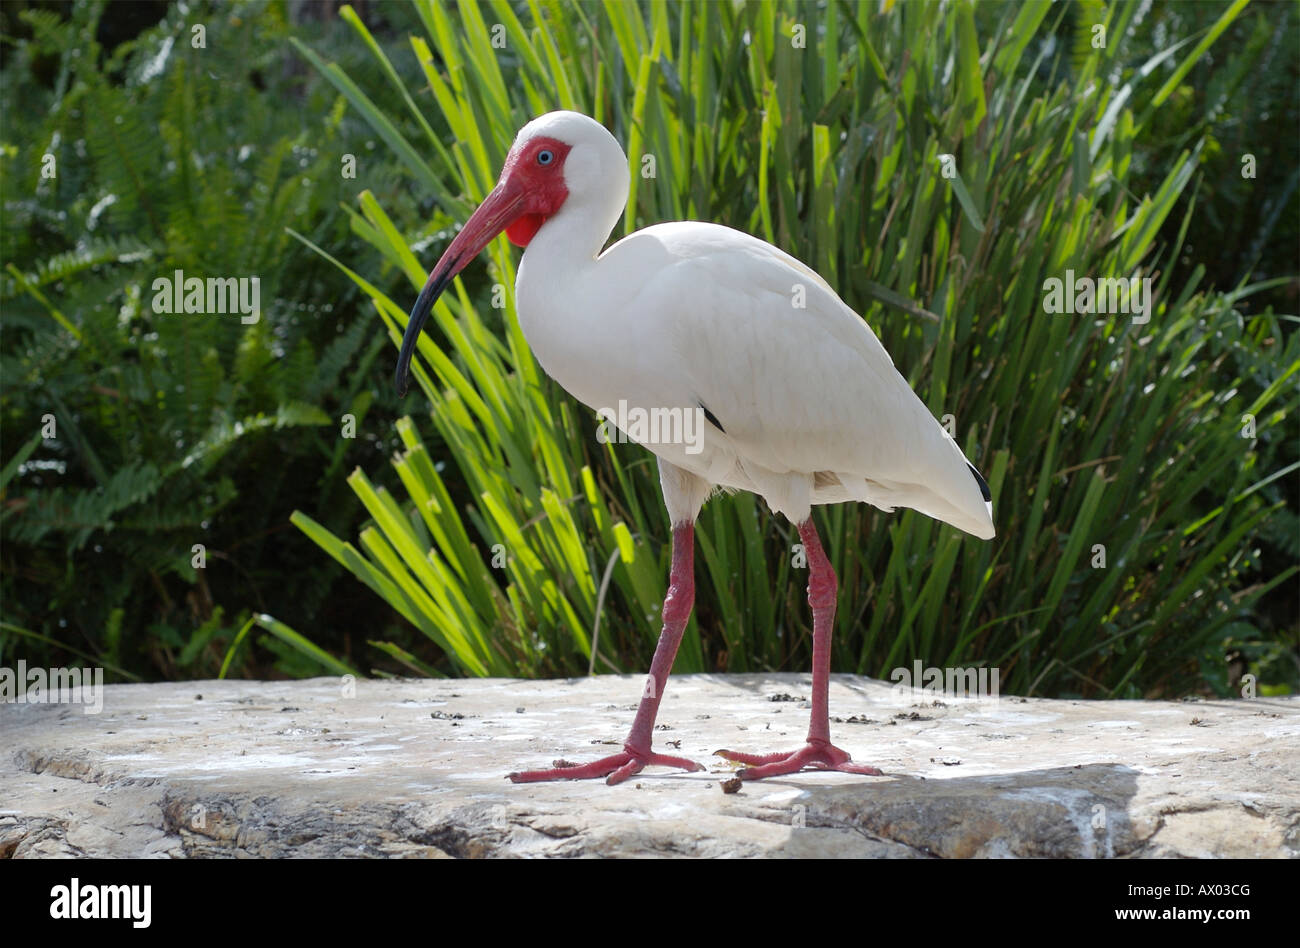 White ibis, Eudocimus albus. Stock Photo